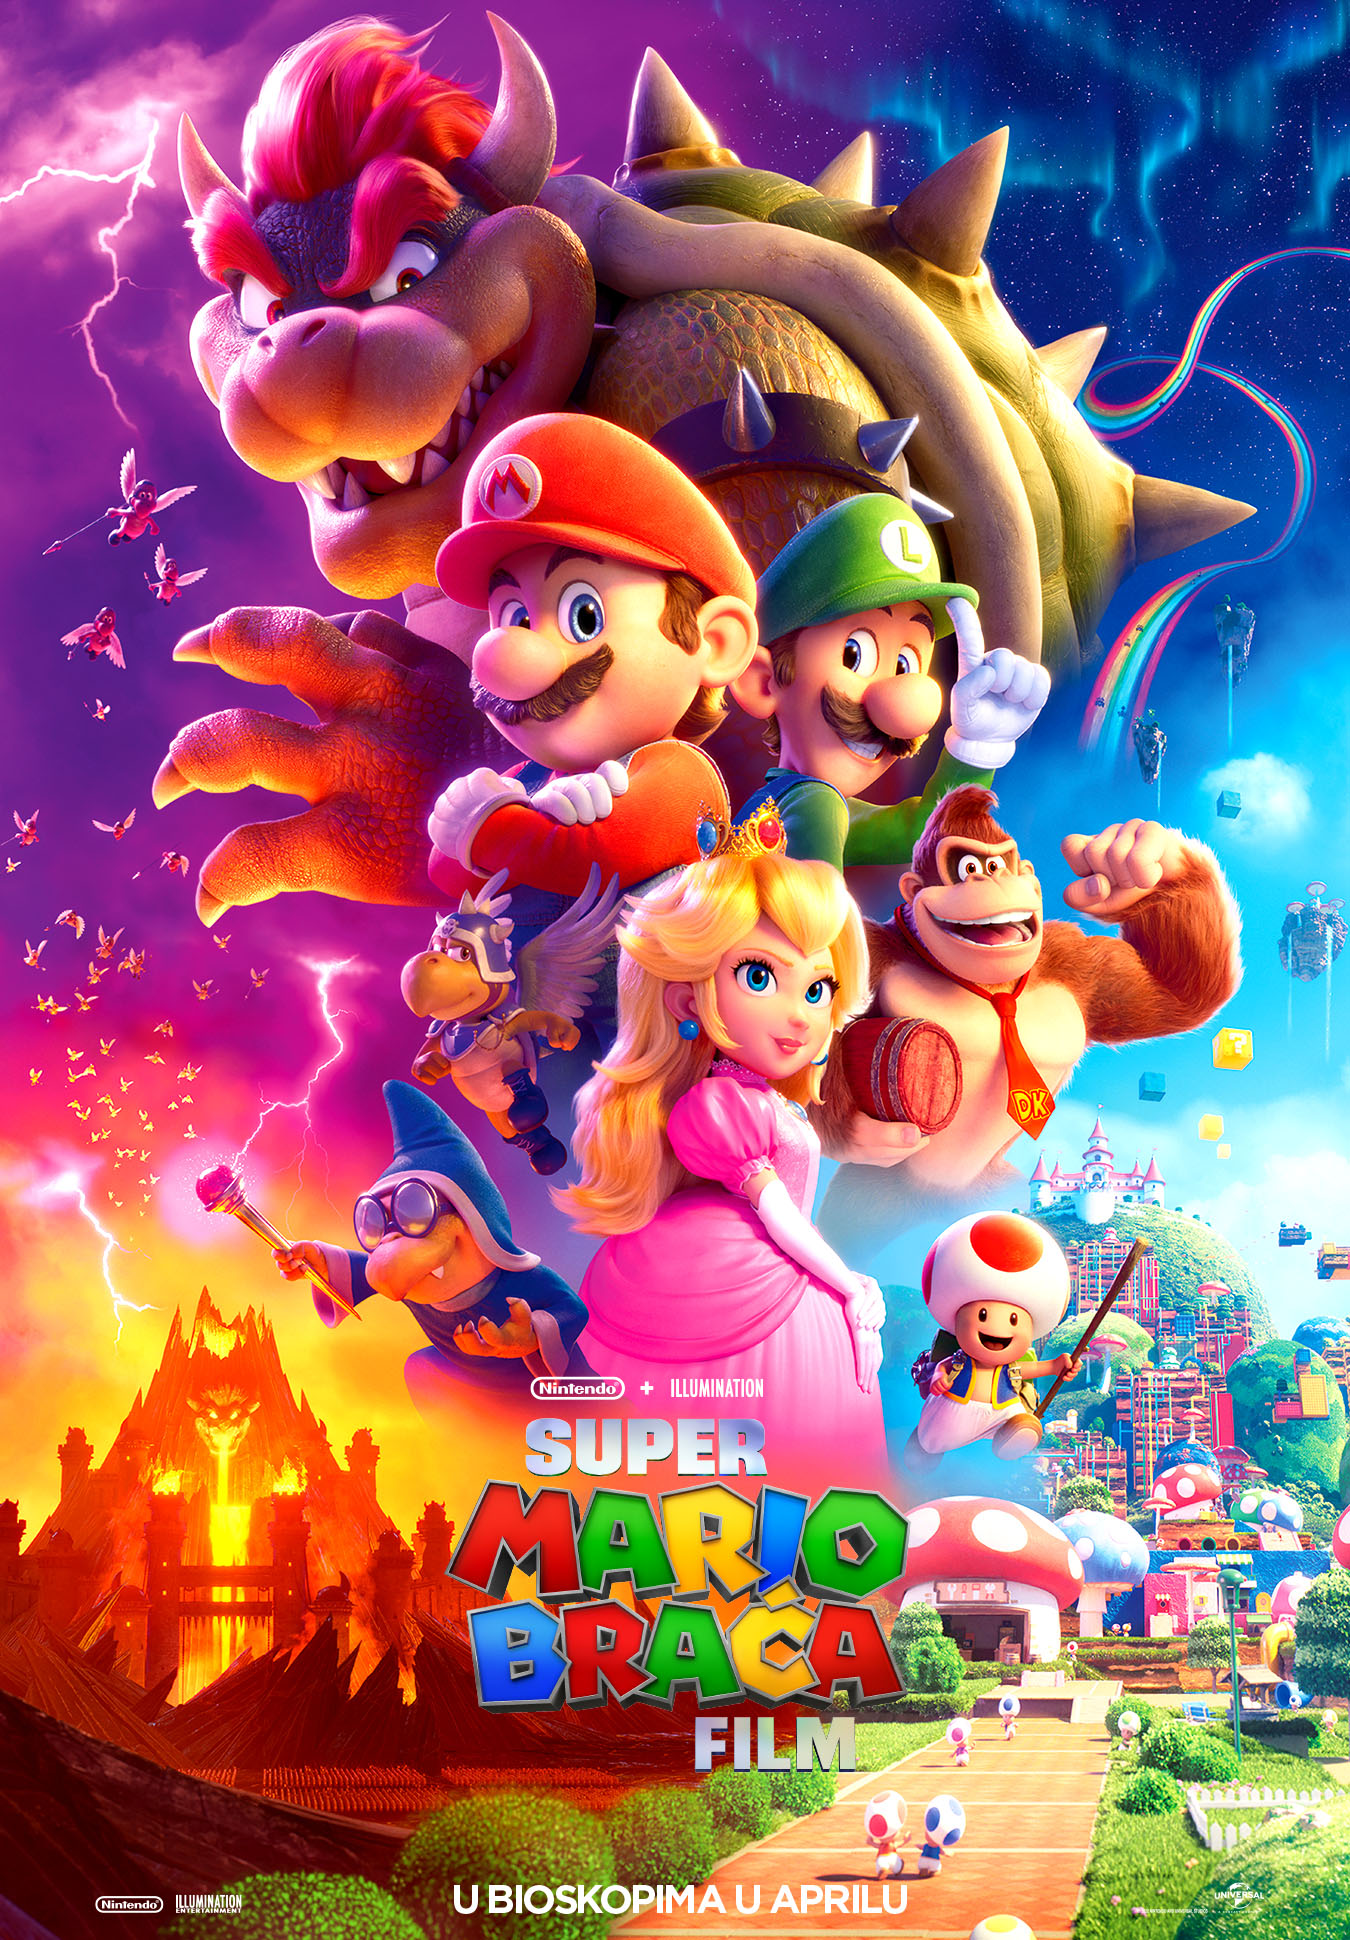 Super Mario braća film - animirana avantura u kojoj će uživati cela porodica